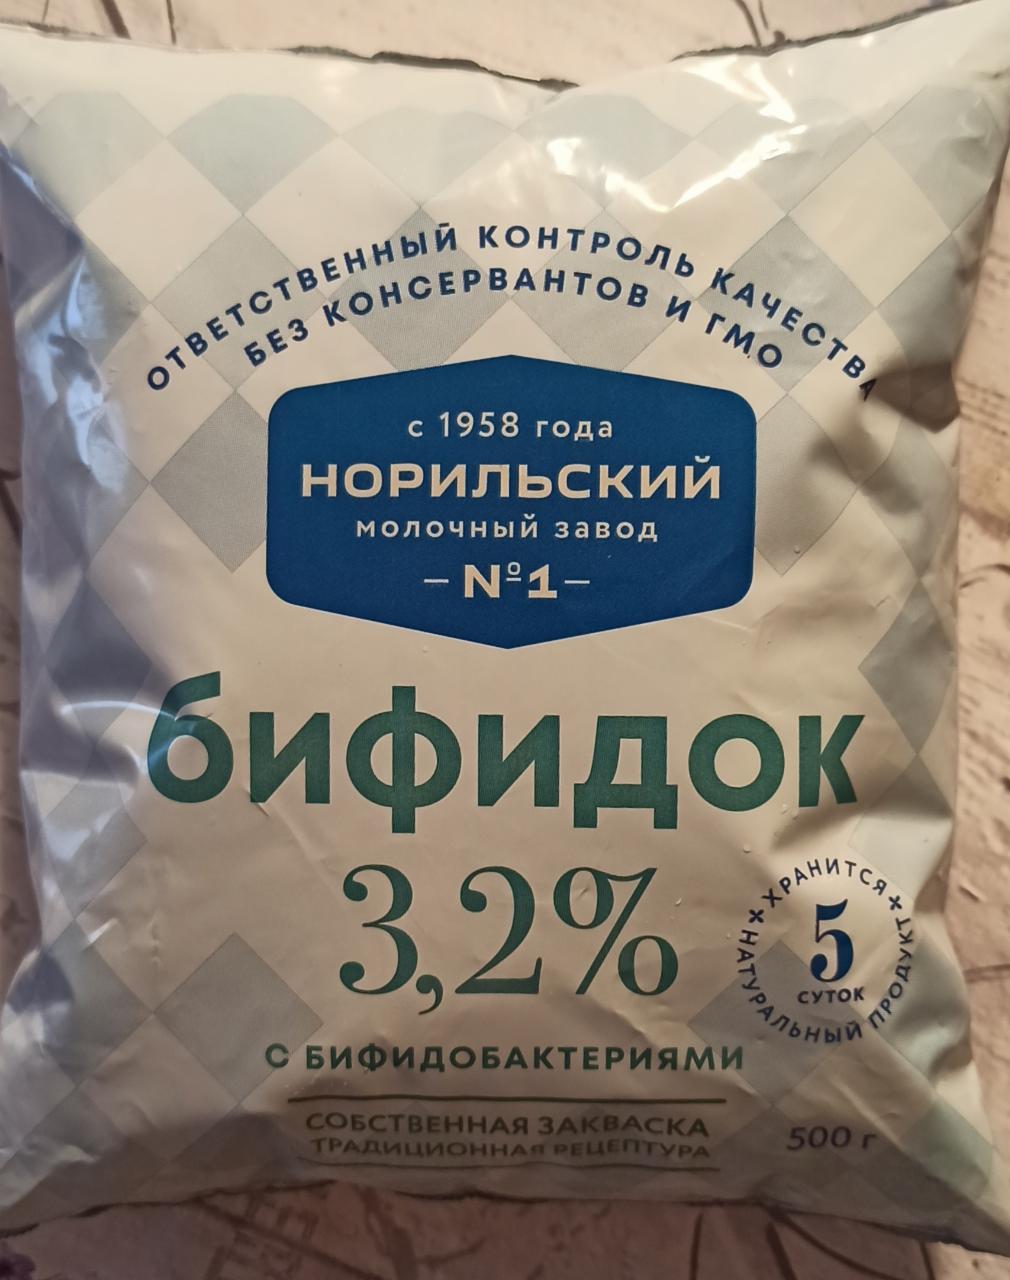 Фото - Бифидок 3.2% кефир обогащённый бифидобактериями с использованием сухого молока Норильский молочный завод